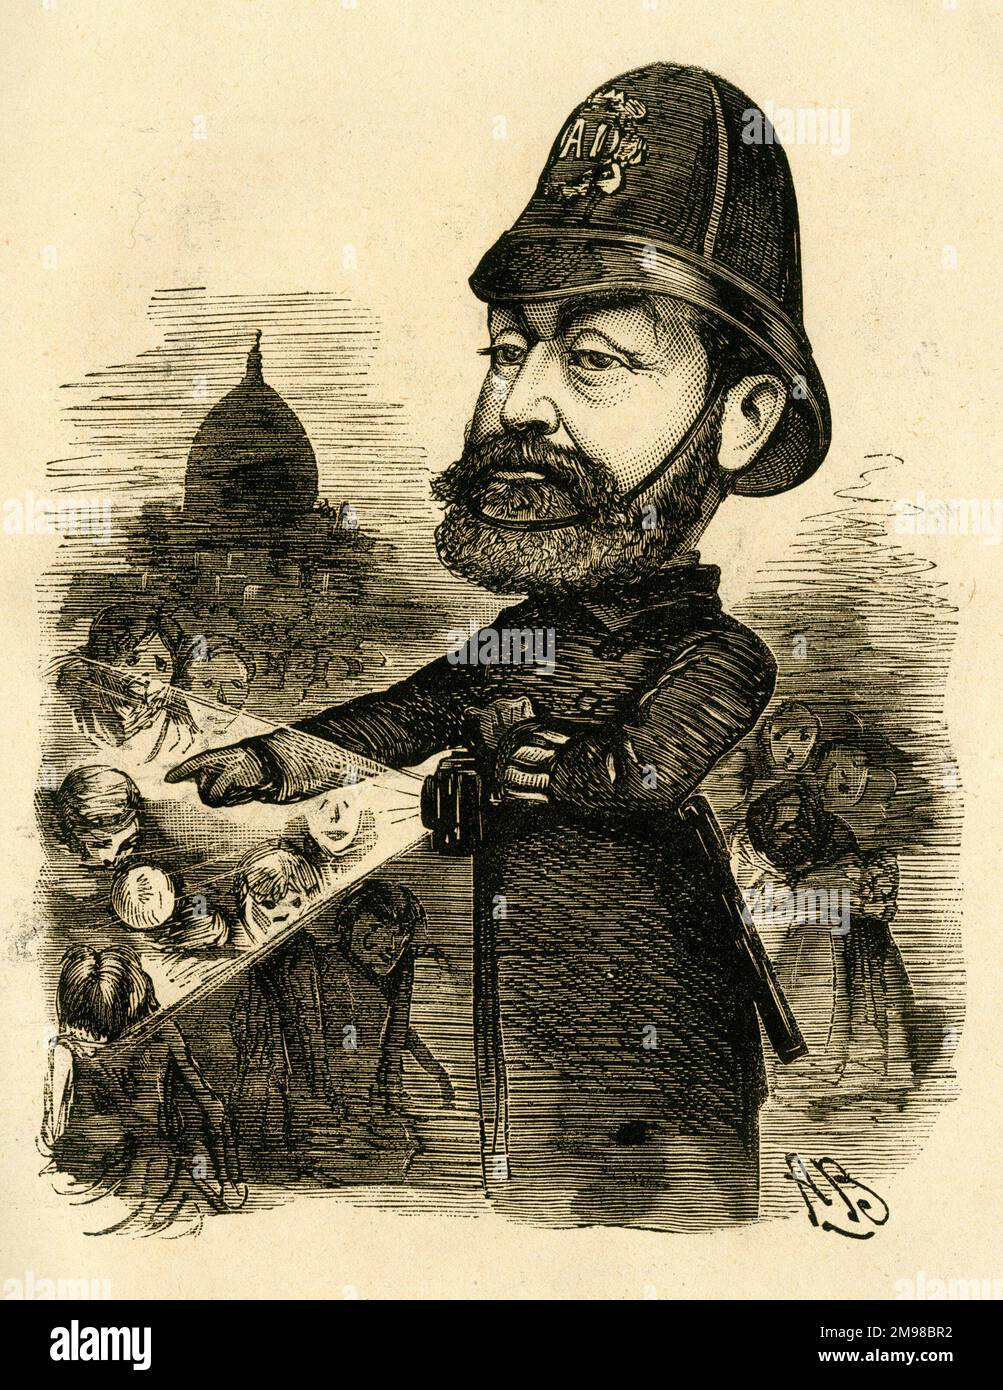 Cartone animato, George Robert Sims (1847-1922), giornalista, poeta, drammaturgo e romanziere inglese, visto qui vestito da poliziotto. Nonostante la sua salute incerta attraverso l'eccesso di indulgenza, era uno scrittore prolifico. La didascalia recita: Orribile Londra! Foto Stock